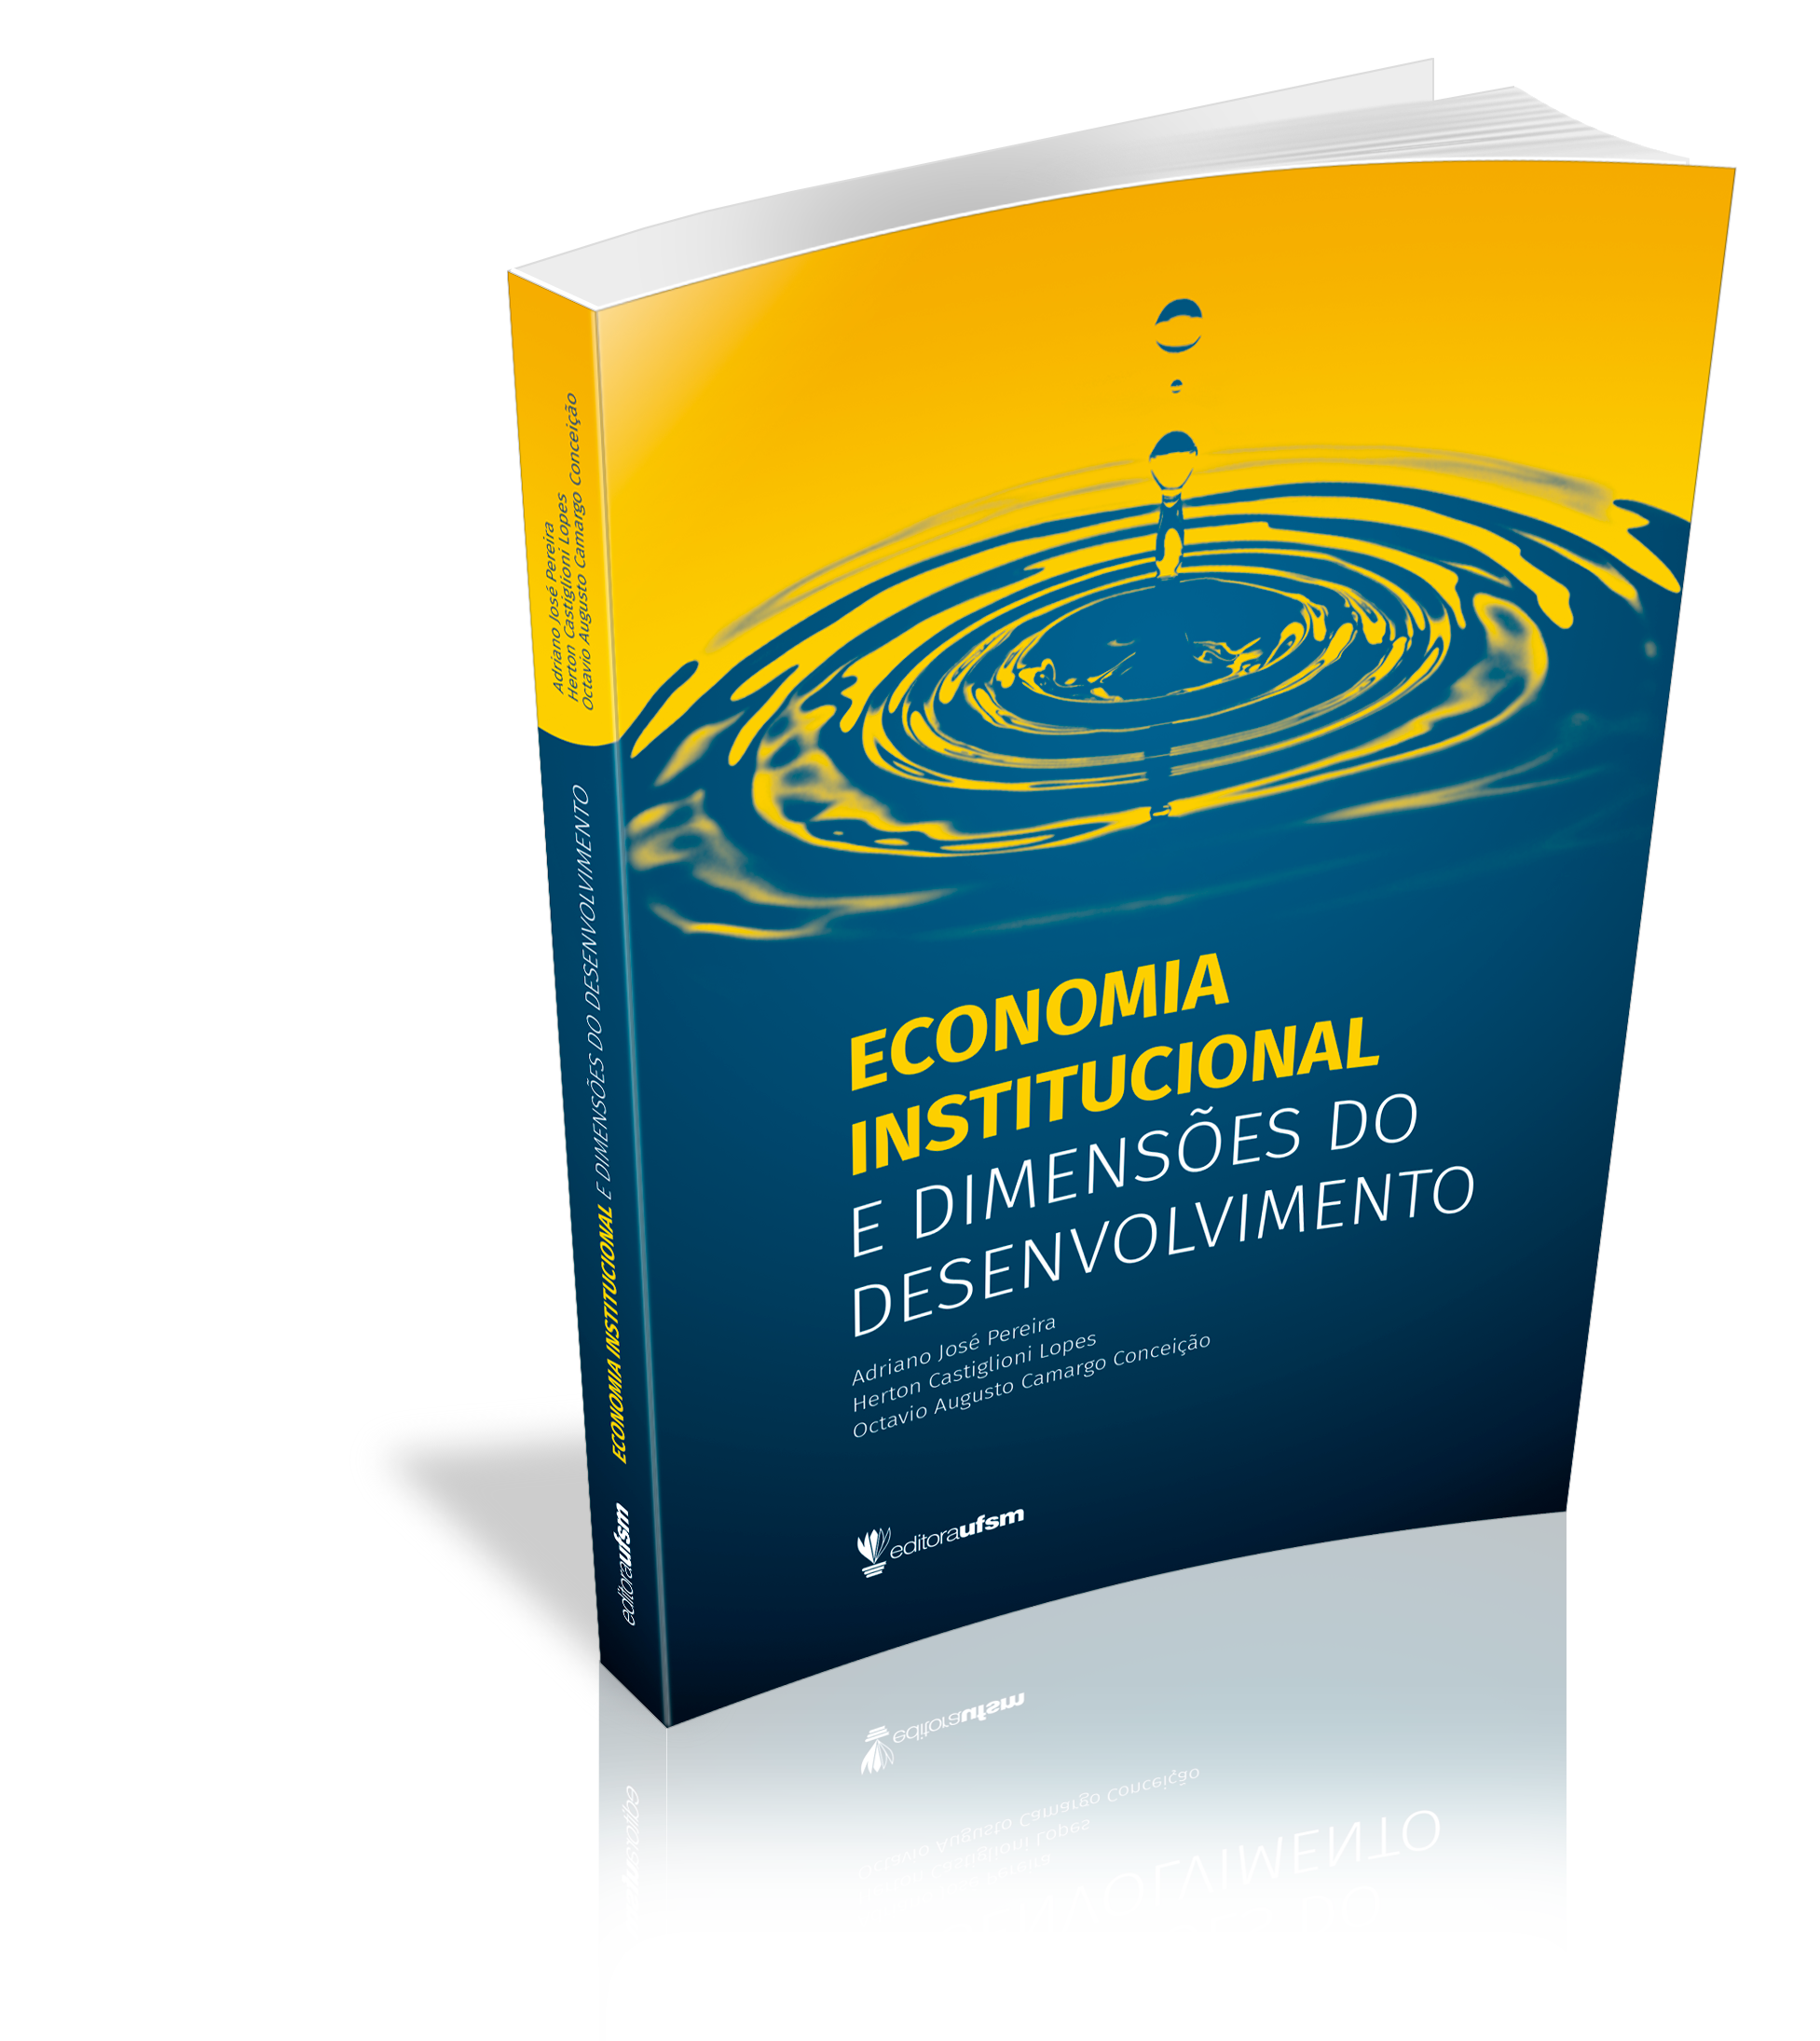 Capa do livro Economia institucional e dimensões do desenvolvimento